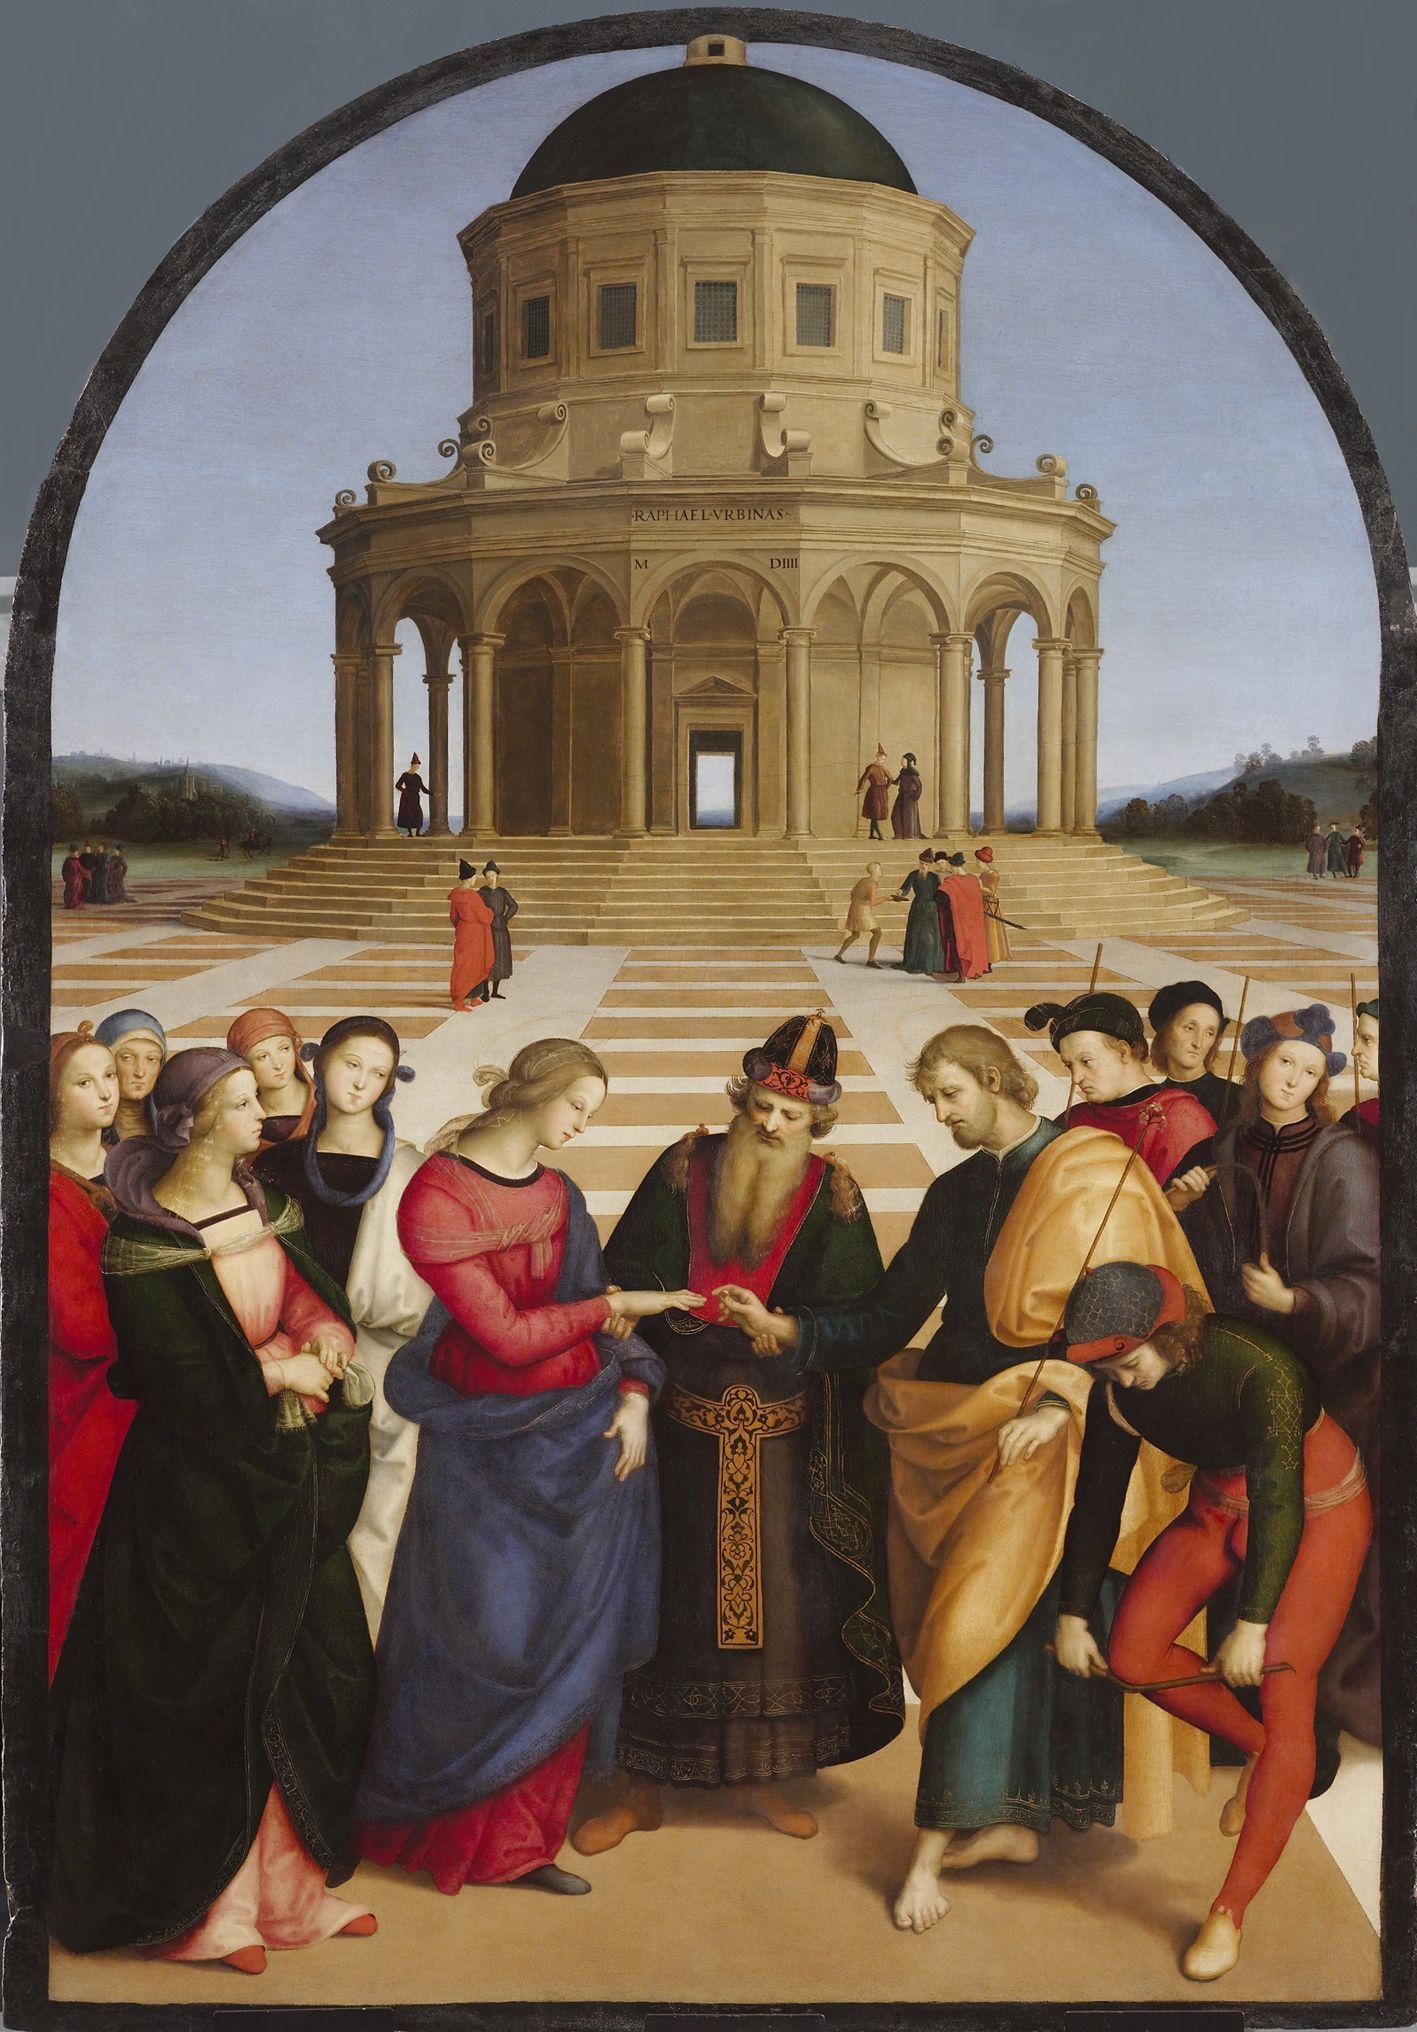 聖母的婚禮 by Raphael Santi - 1504 年 - 170 x 118 釐米 